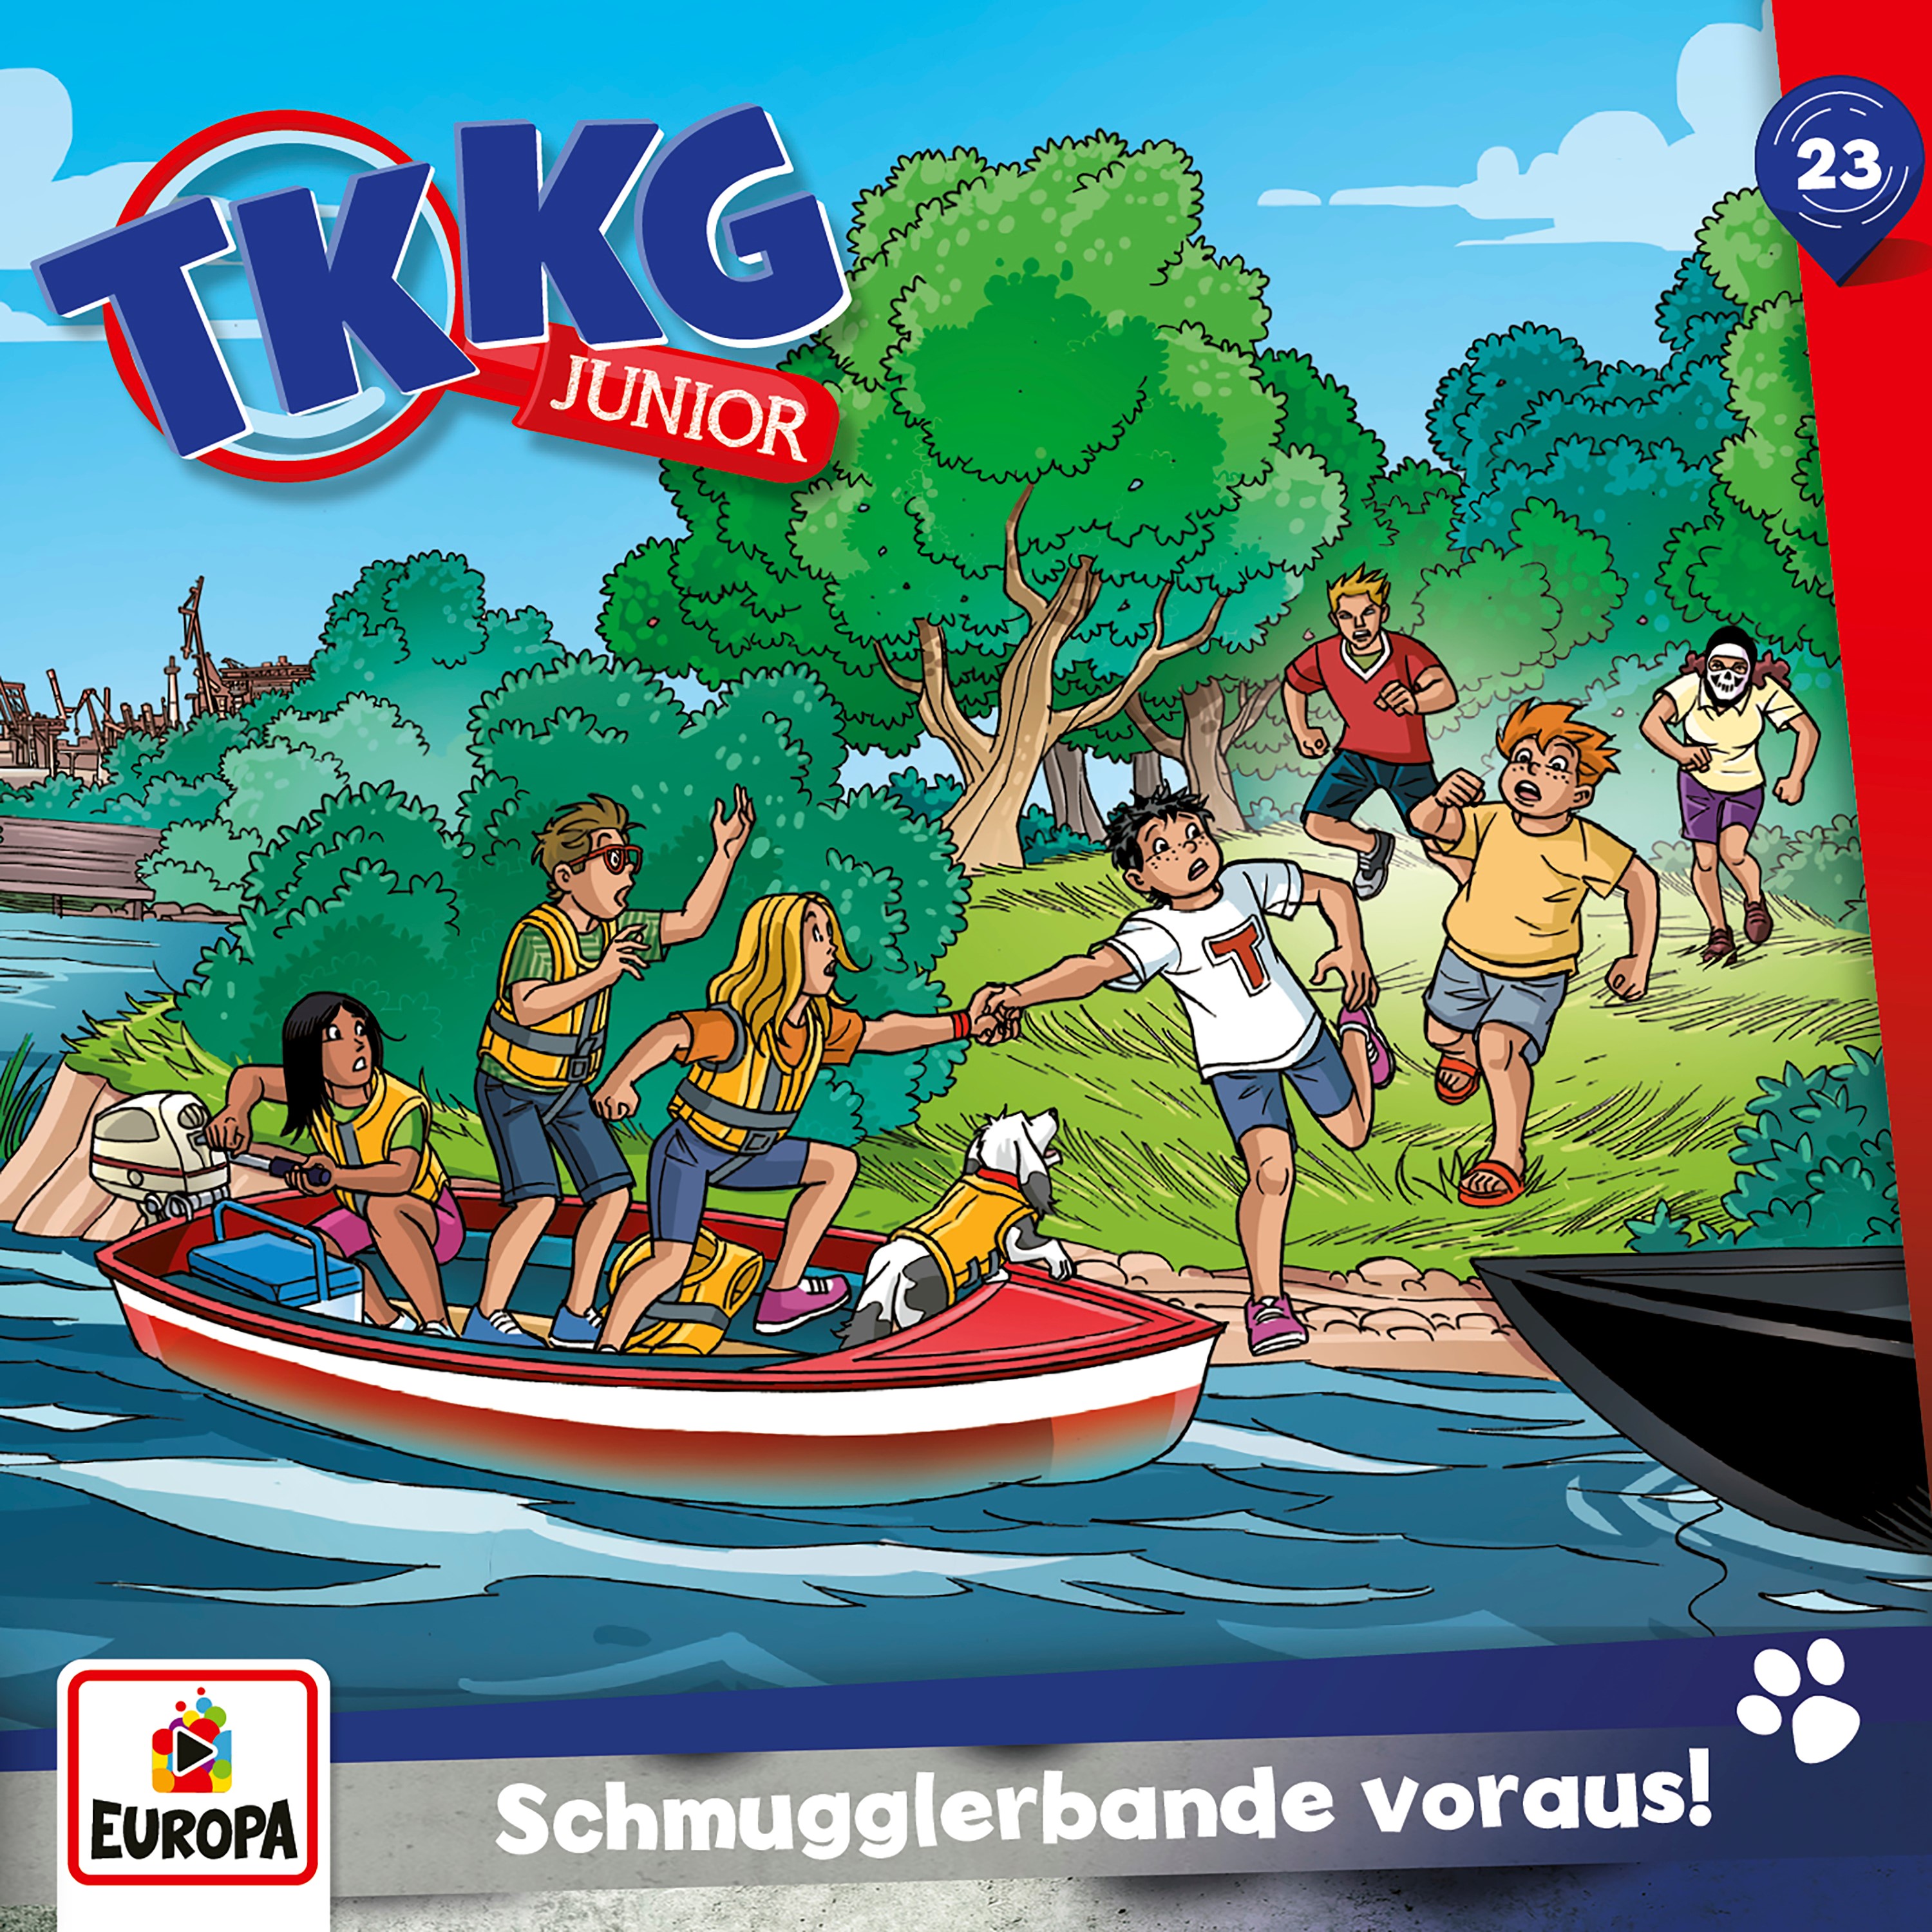 TKKG Junior - Schmugglerbande voraus!